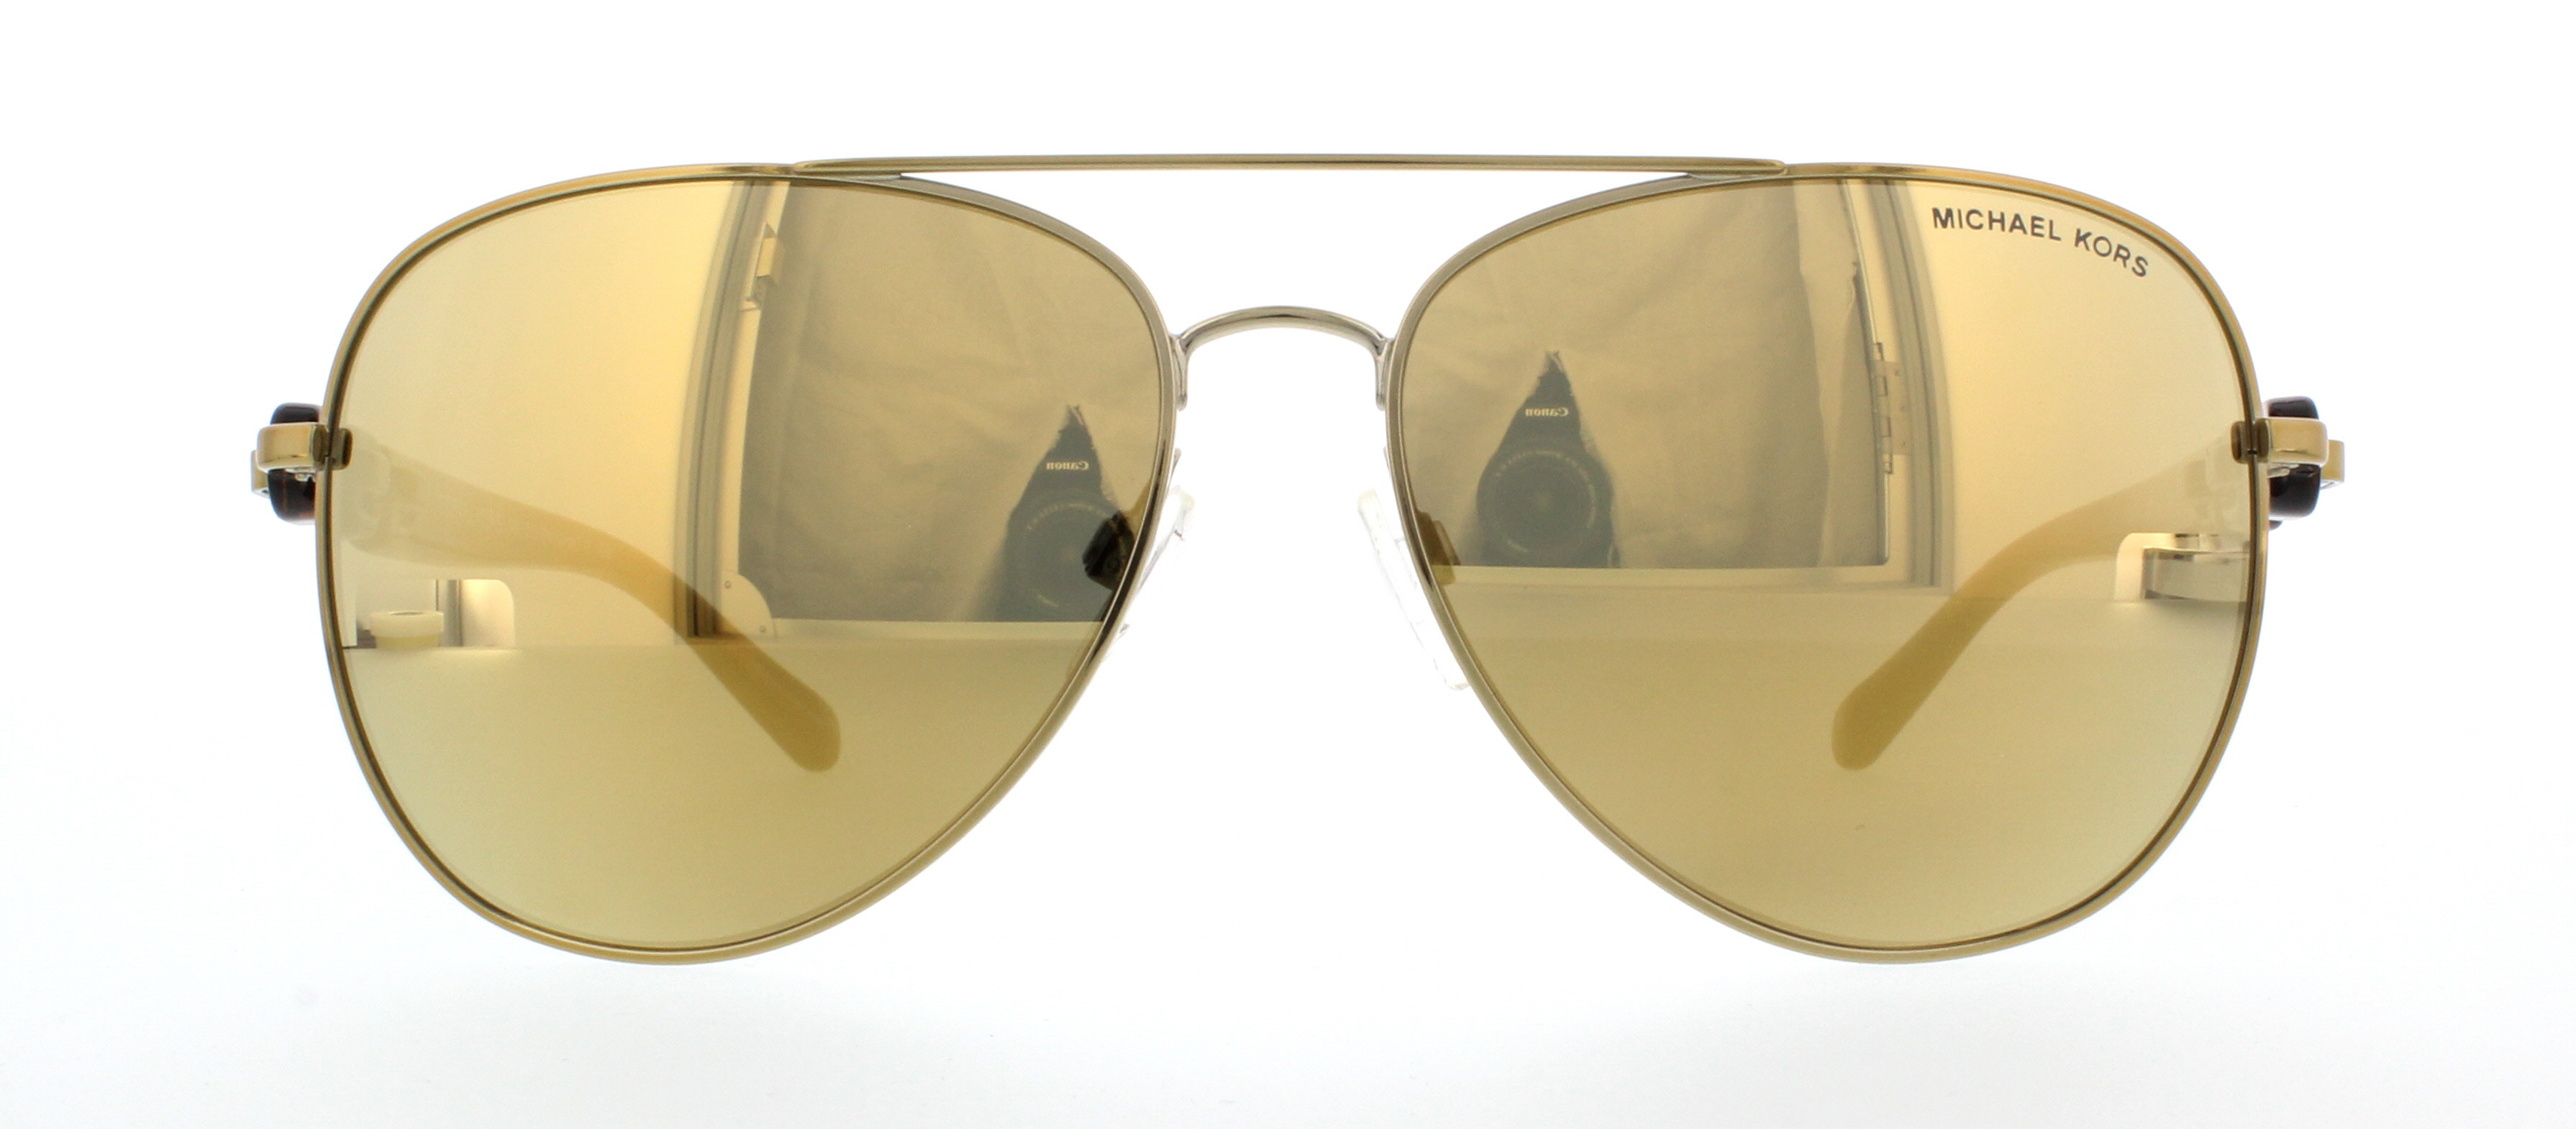 Designer Frames Outlet. Michael Kors Sunglasses MK1015 Pandora